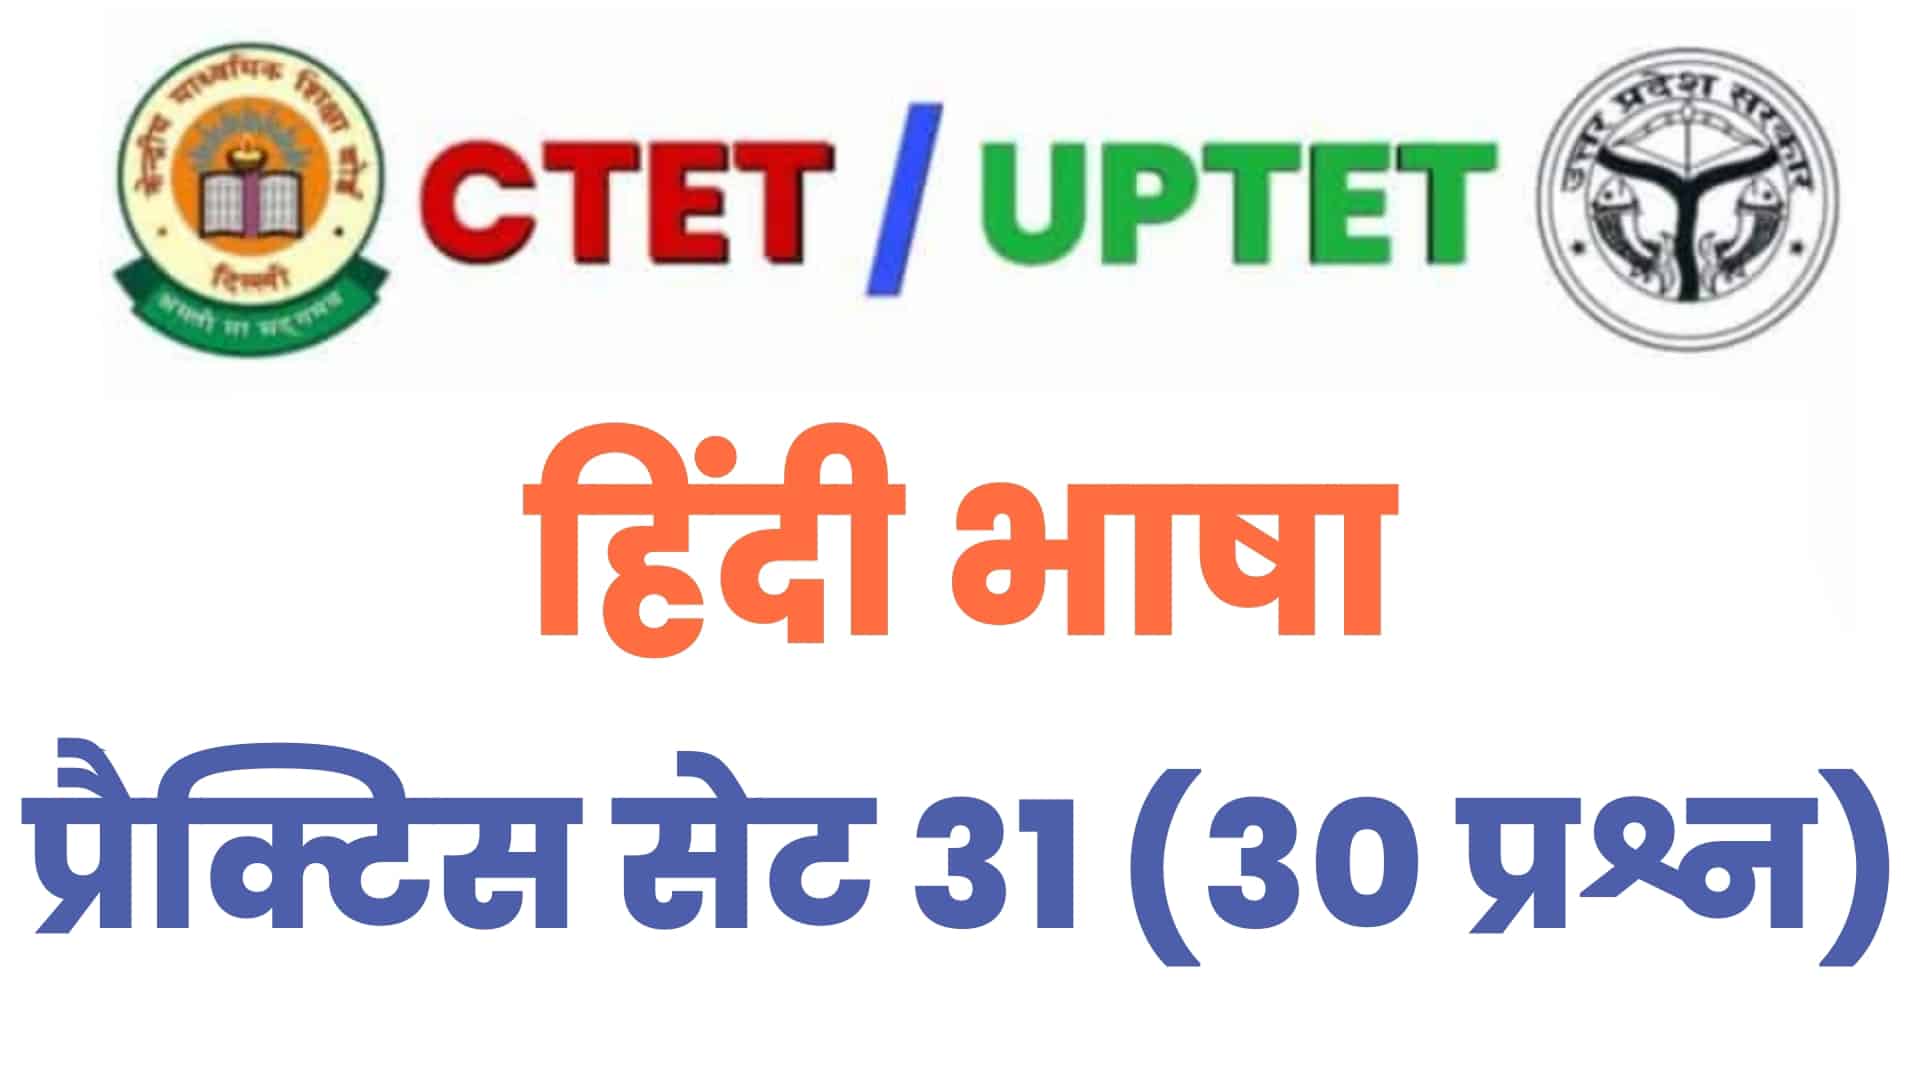 UPTET/CTET हिंदी भाषा प्रैक्टिस सेट 31 : परीक्षा में शामिल होने से पहले इन 30 प्रश्नों पर डालें एक नज़र